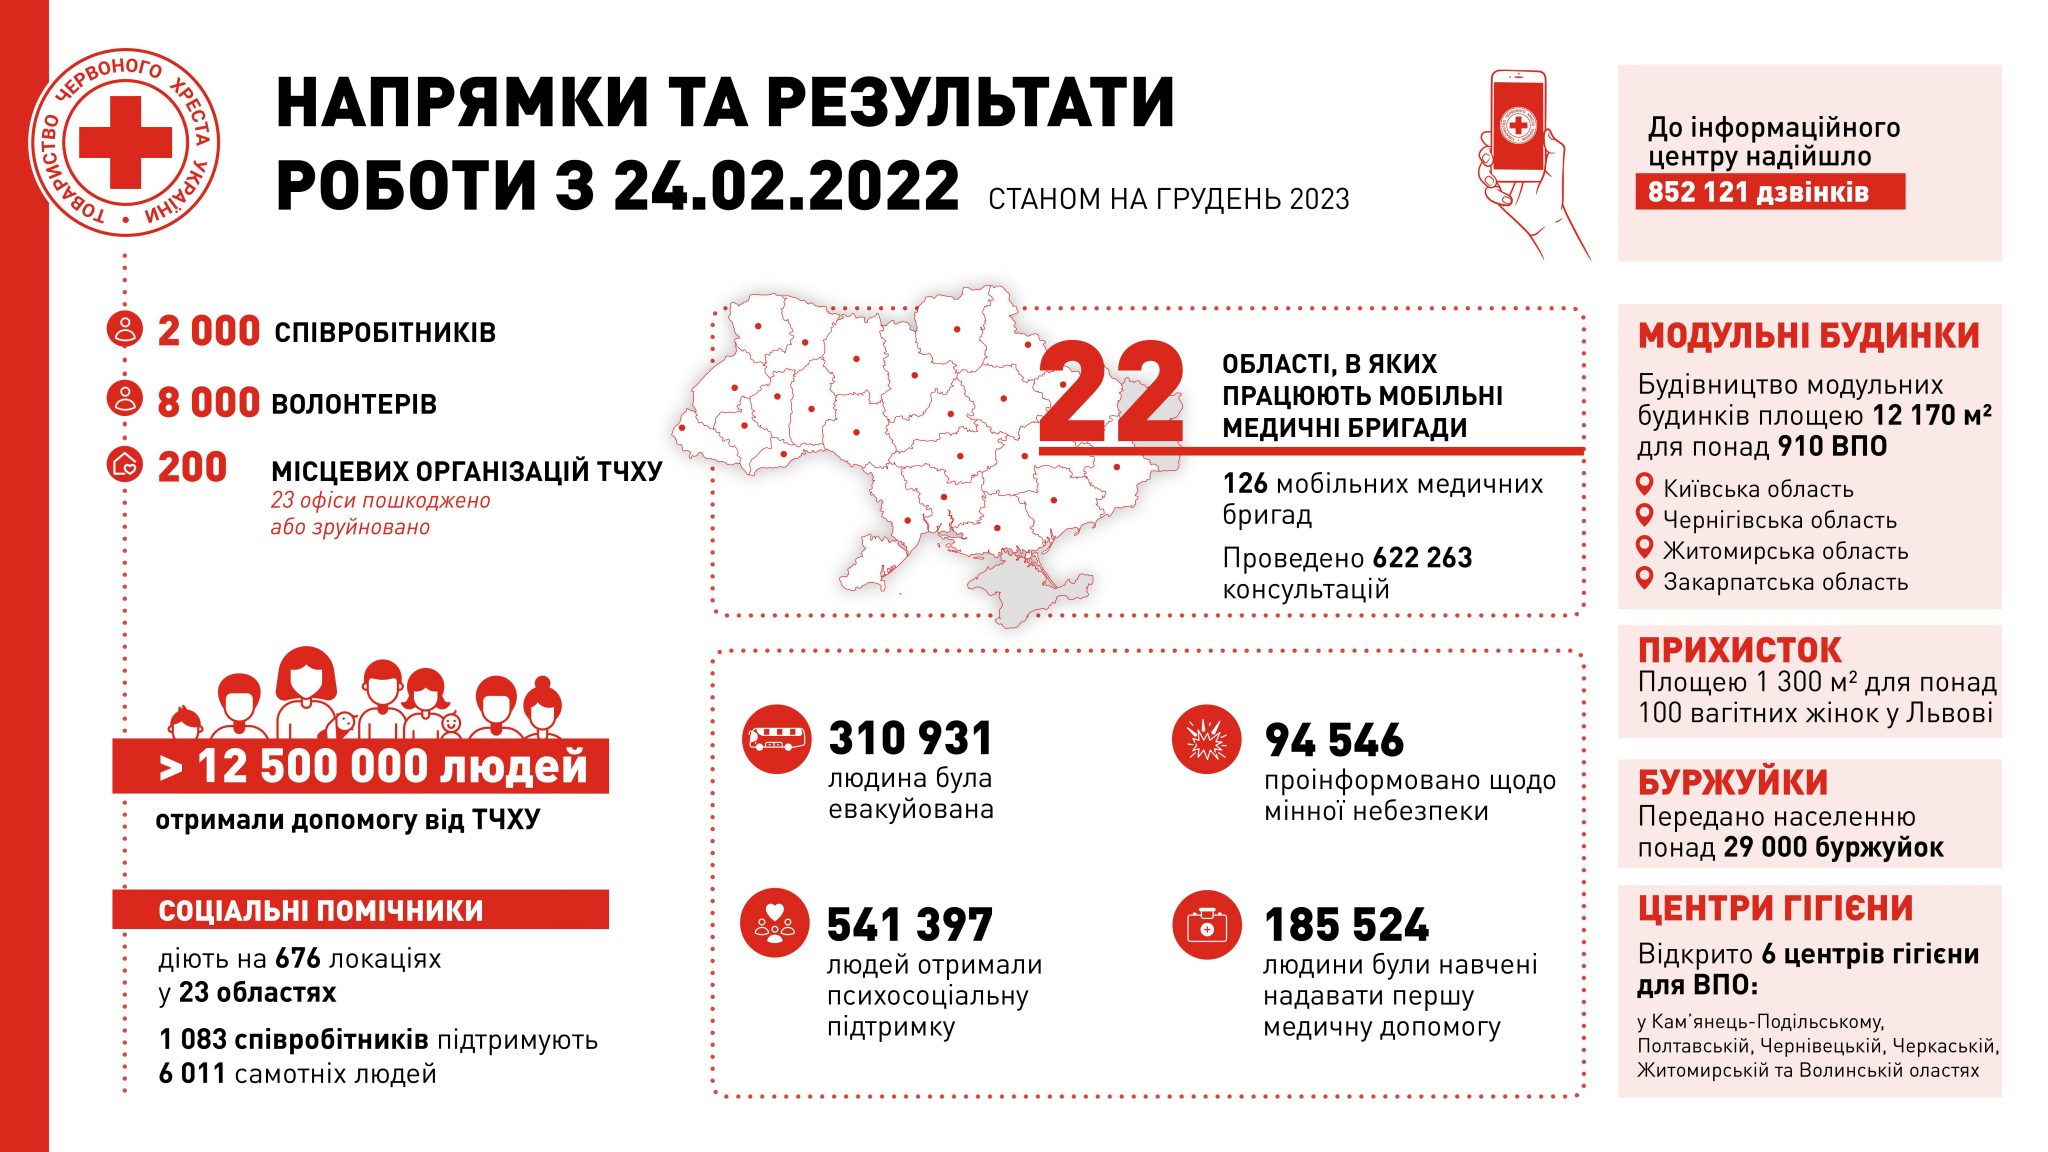 Красный крест Украины итоги работы в 2023 году